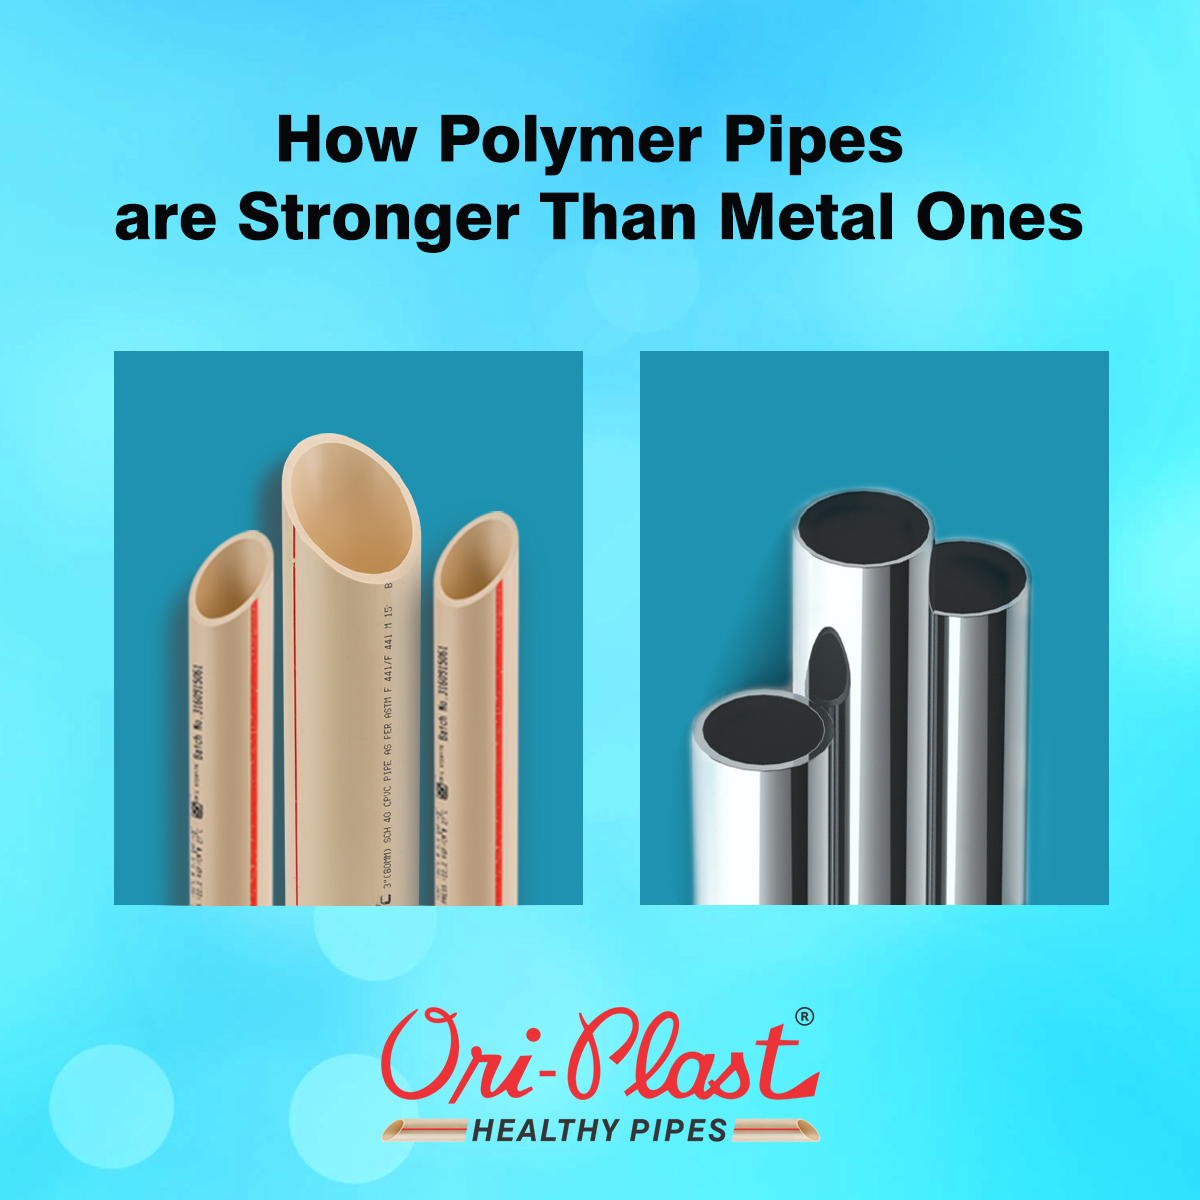 聚合物管为什么比金属管更坚固